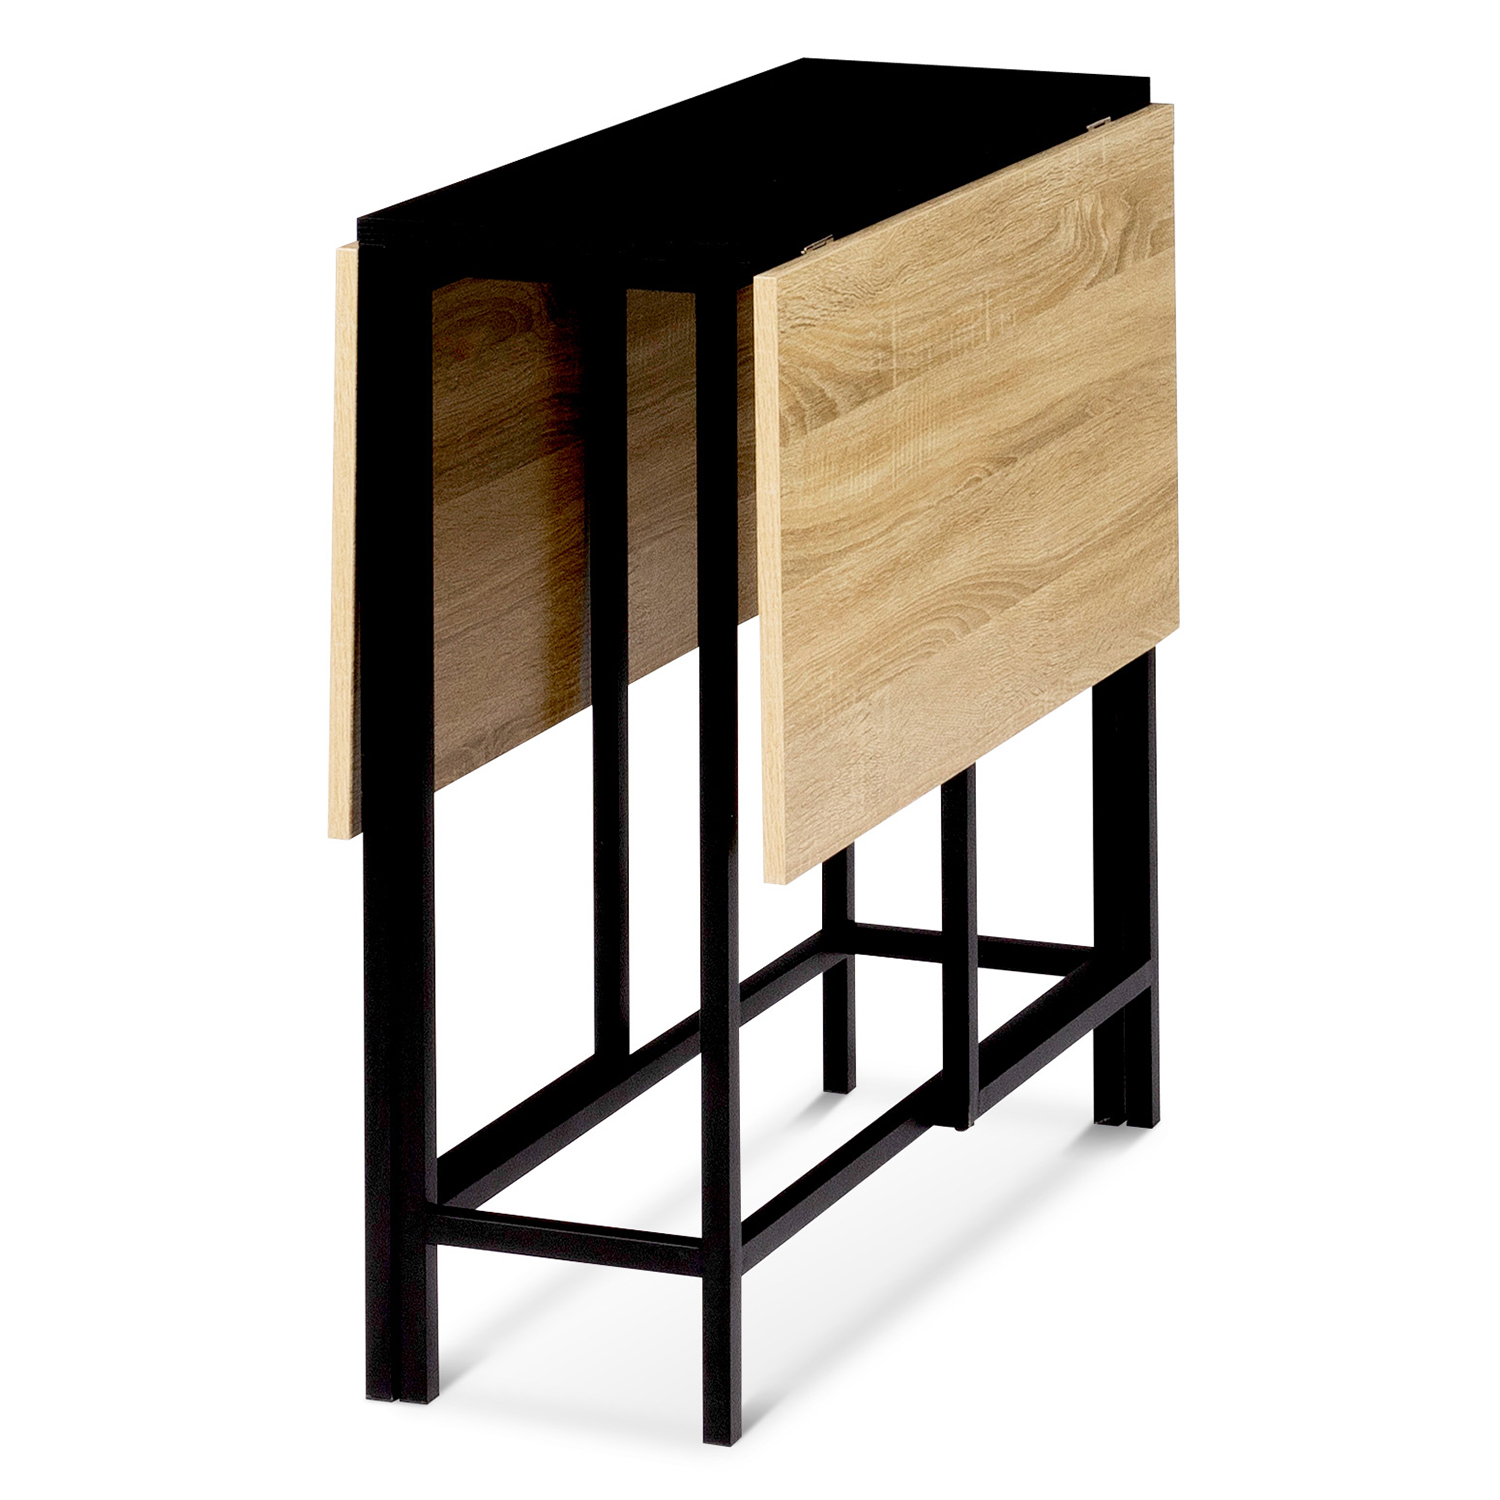 Table rabattable design - RABATY